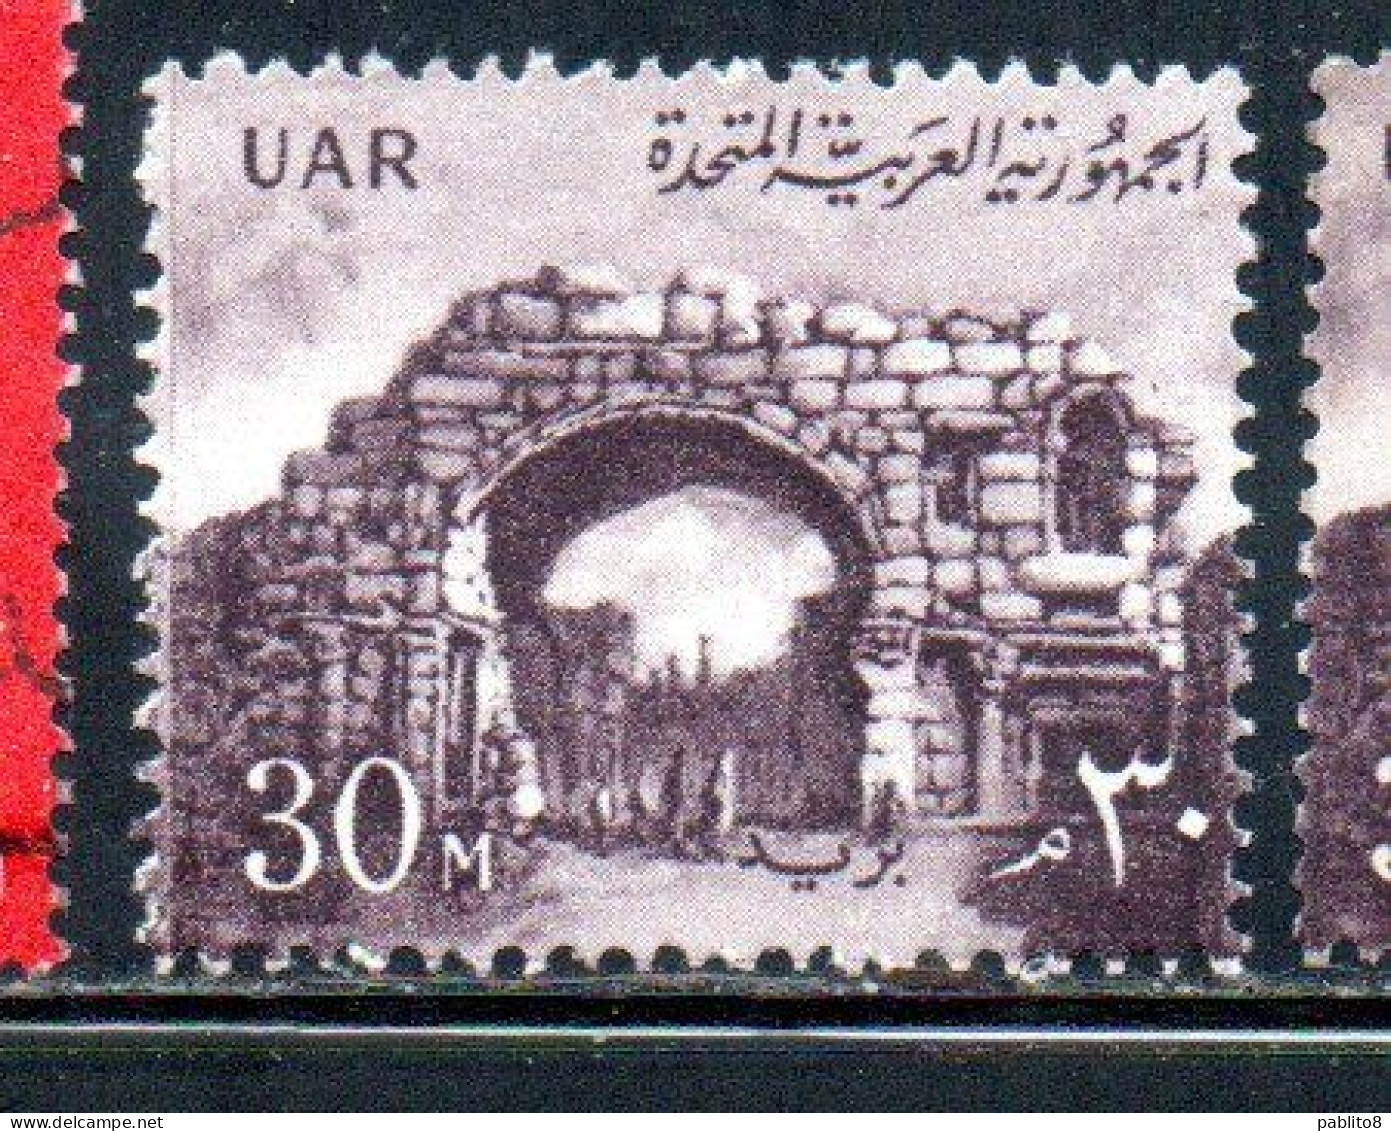 UAR EGYPT EGITTO 1959 1960 ST. SIMON'S GATE BOSRA SYRIA  30m MNH - Ungebraucht